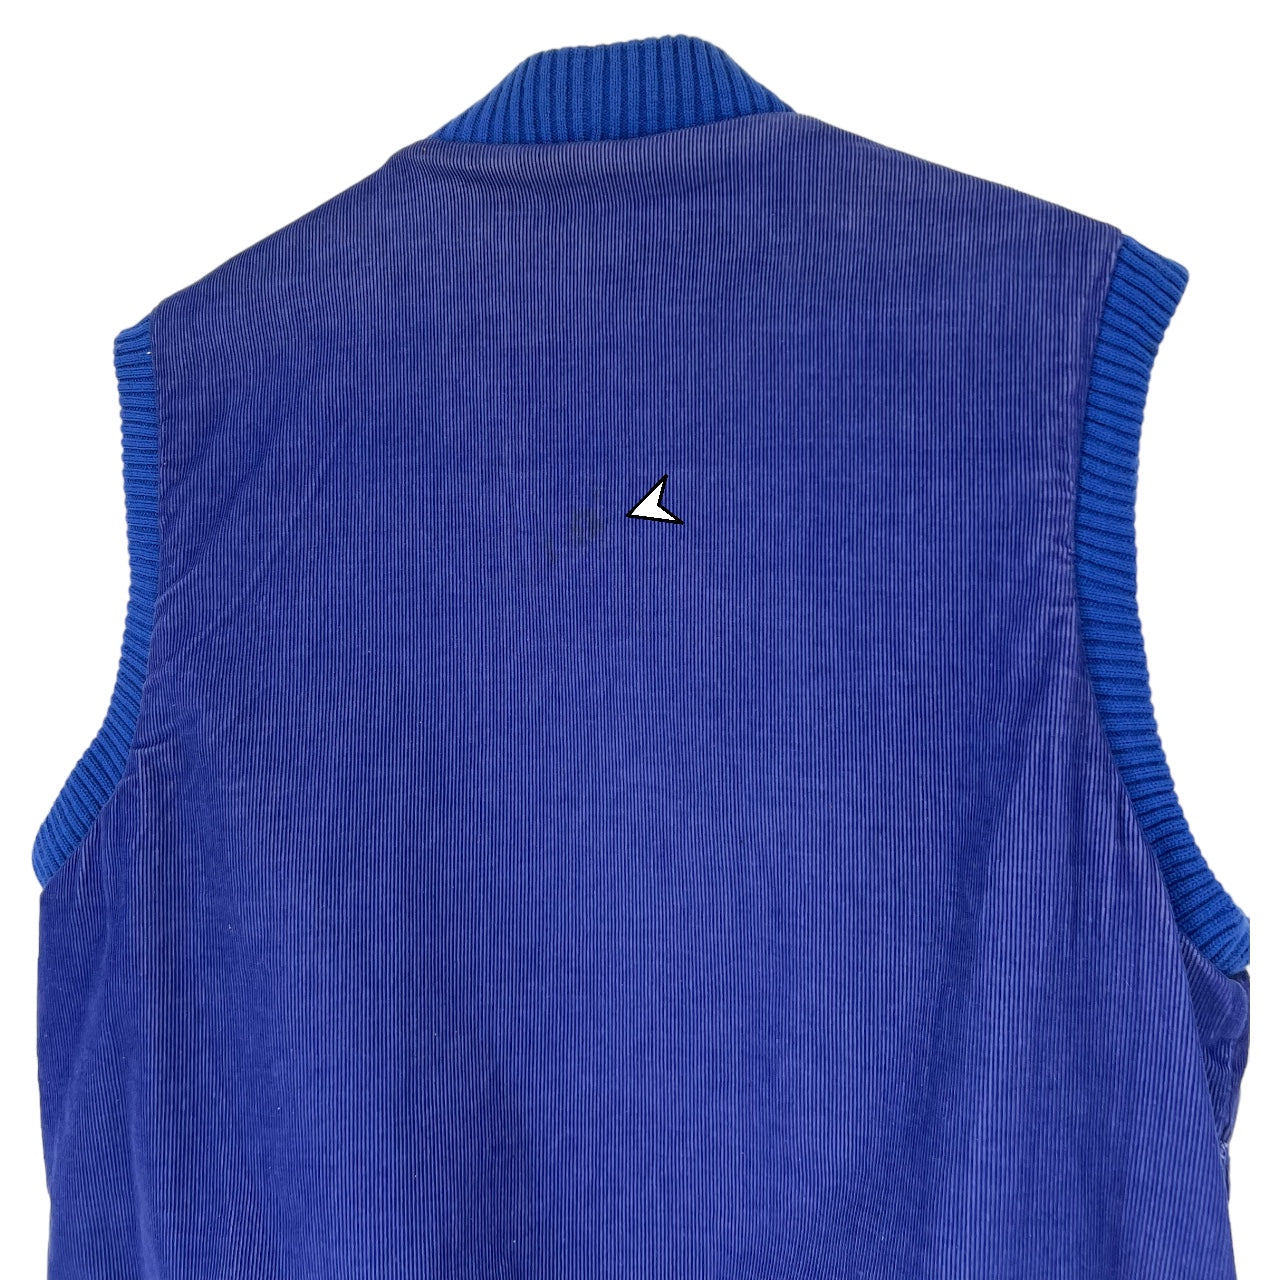 Vintage 90s Bonkers Blue Corduroy Vest Men’s XL